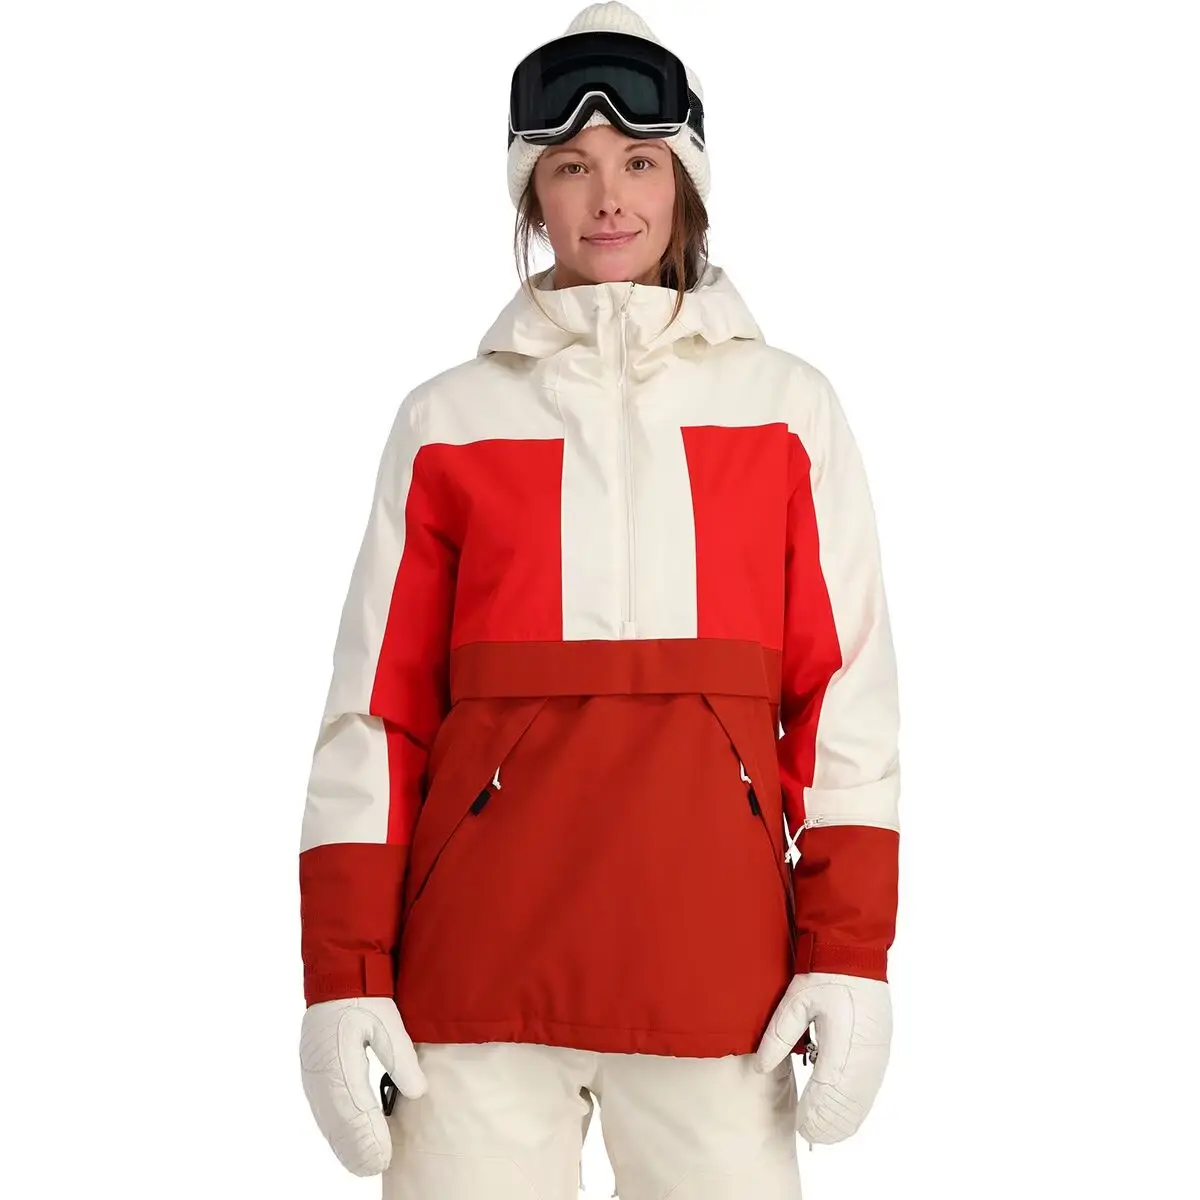 Jersey con aislamiento profesional para exteriores, chaquetas de nieve de invierno para mujer, chaqueta de snowboard de esquí personalizada